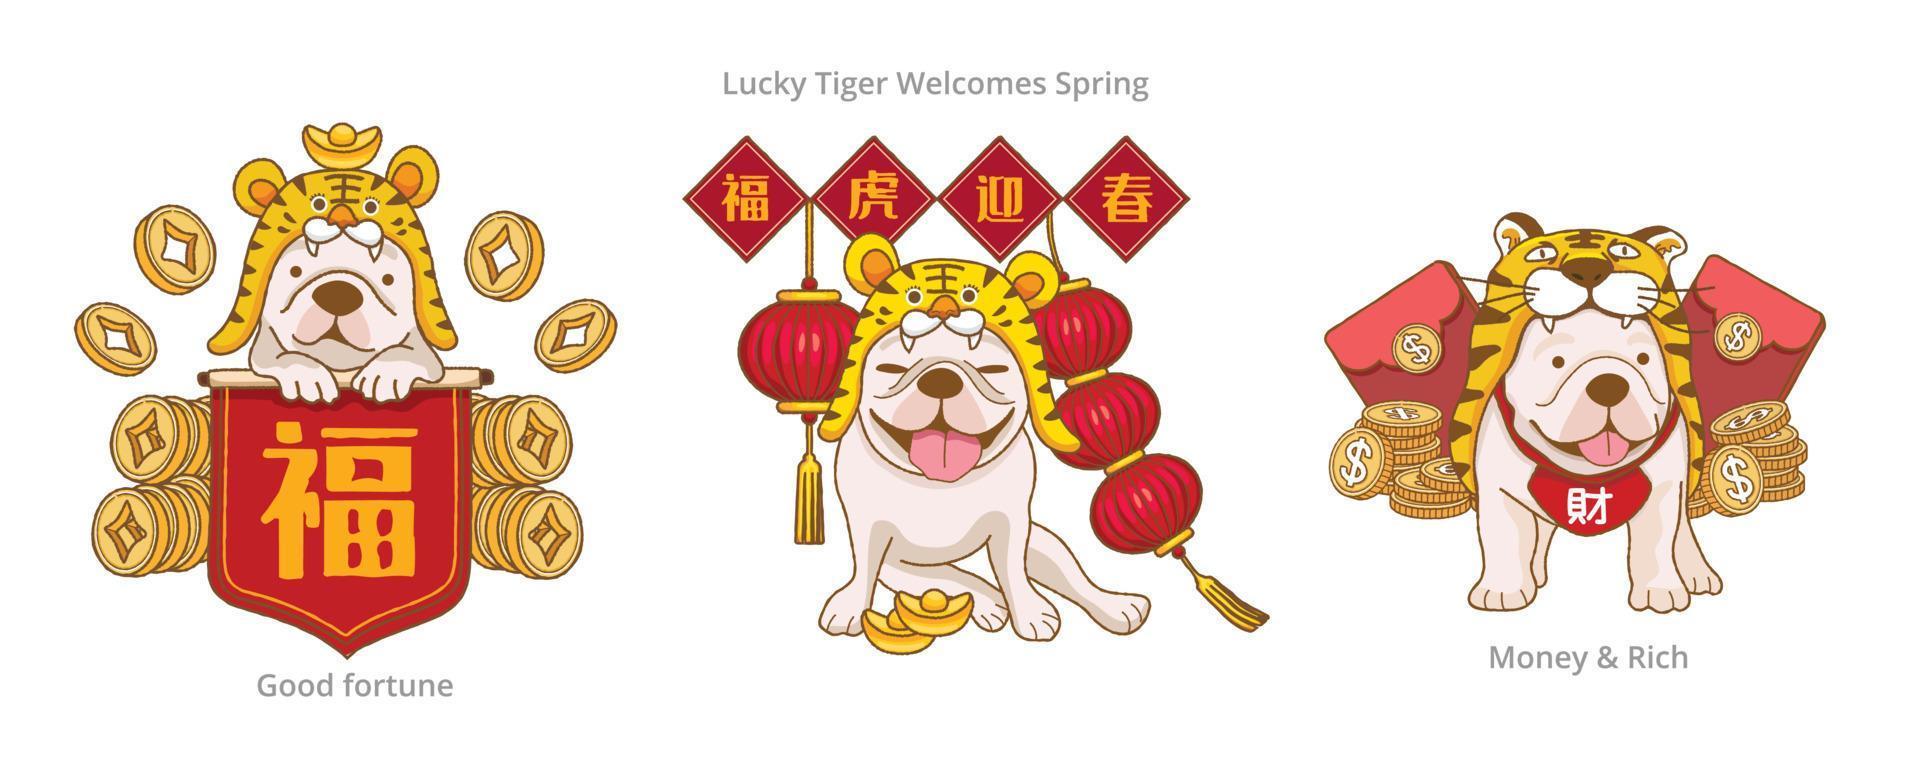 joli bouledogue français vêtu d'un costume de tigre et avec les distiques de printemps rouges, dites bénédictions et tigre chanceux accueillez le printemps pour célébrer le nouvel an chinois vecteur